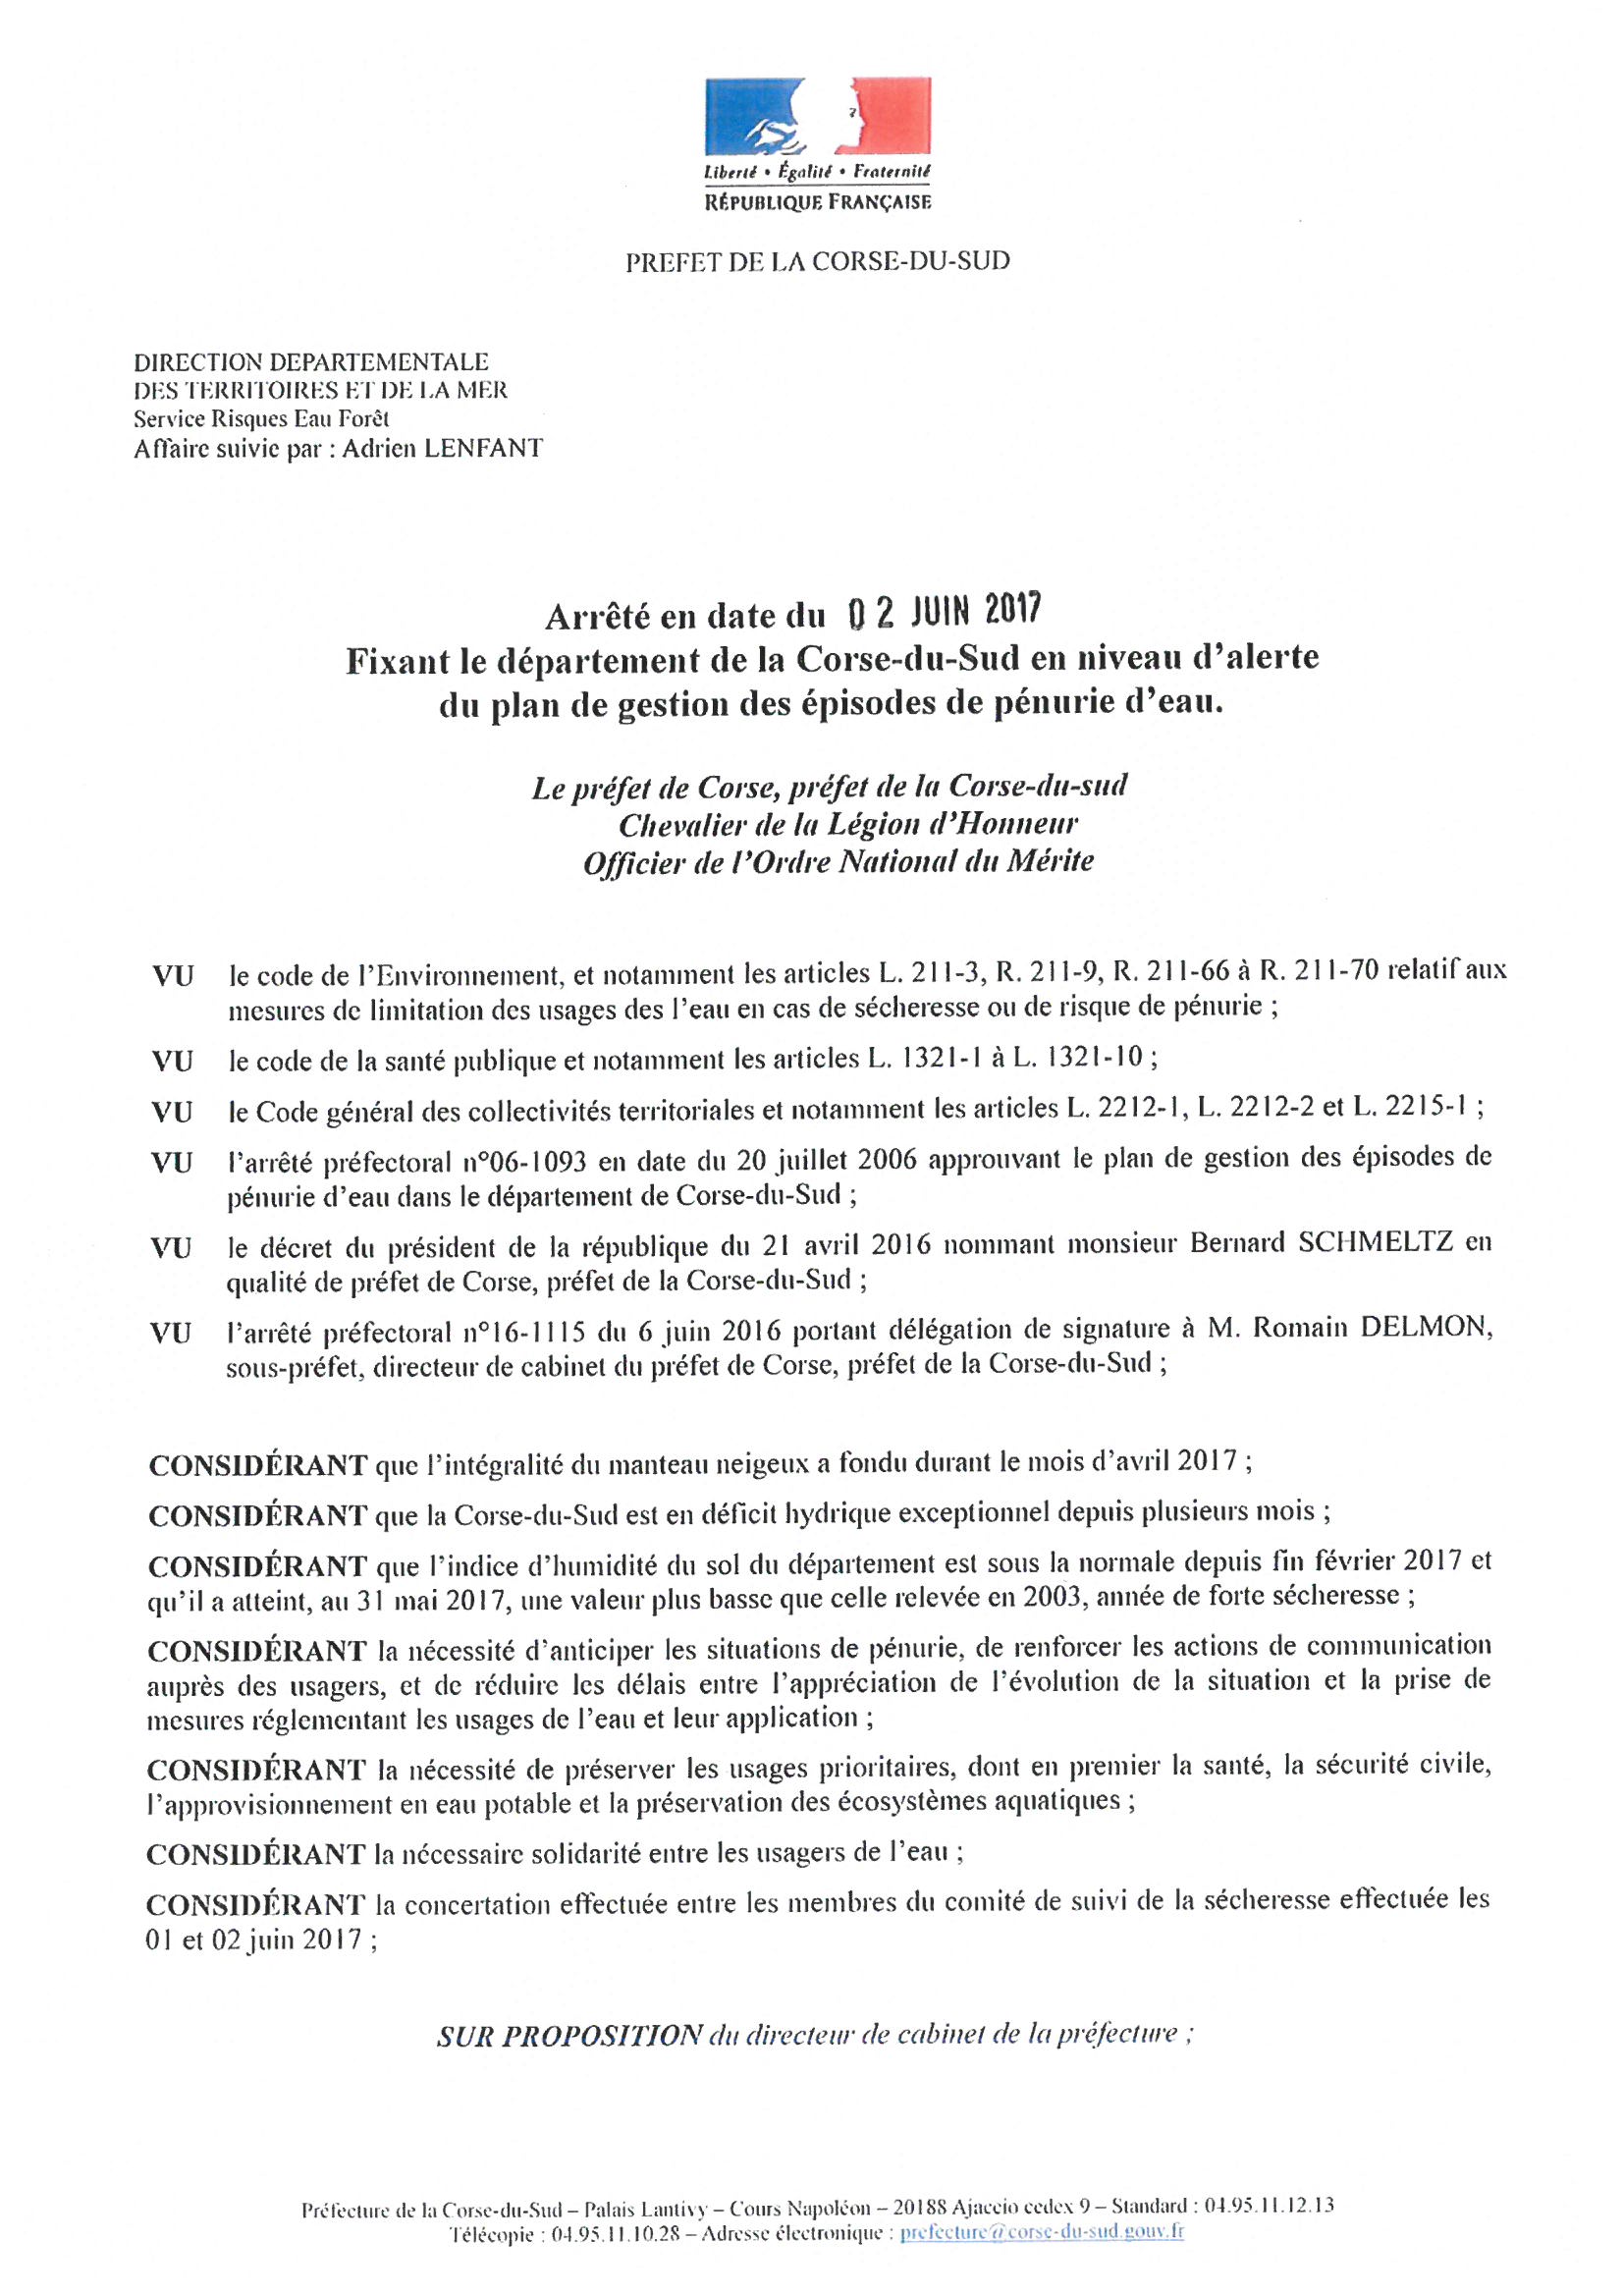 Arrêté en date du 02 juin 2017 fixant le Département de Corse du sud en niveau d'alerte du plan de gestion des épisodes de pénurie d'eau.